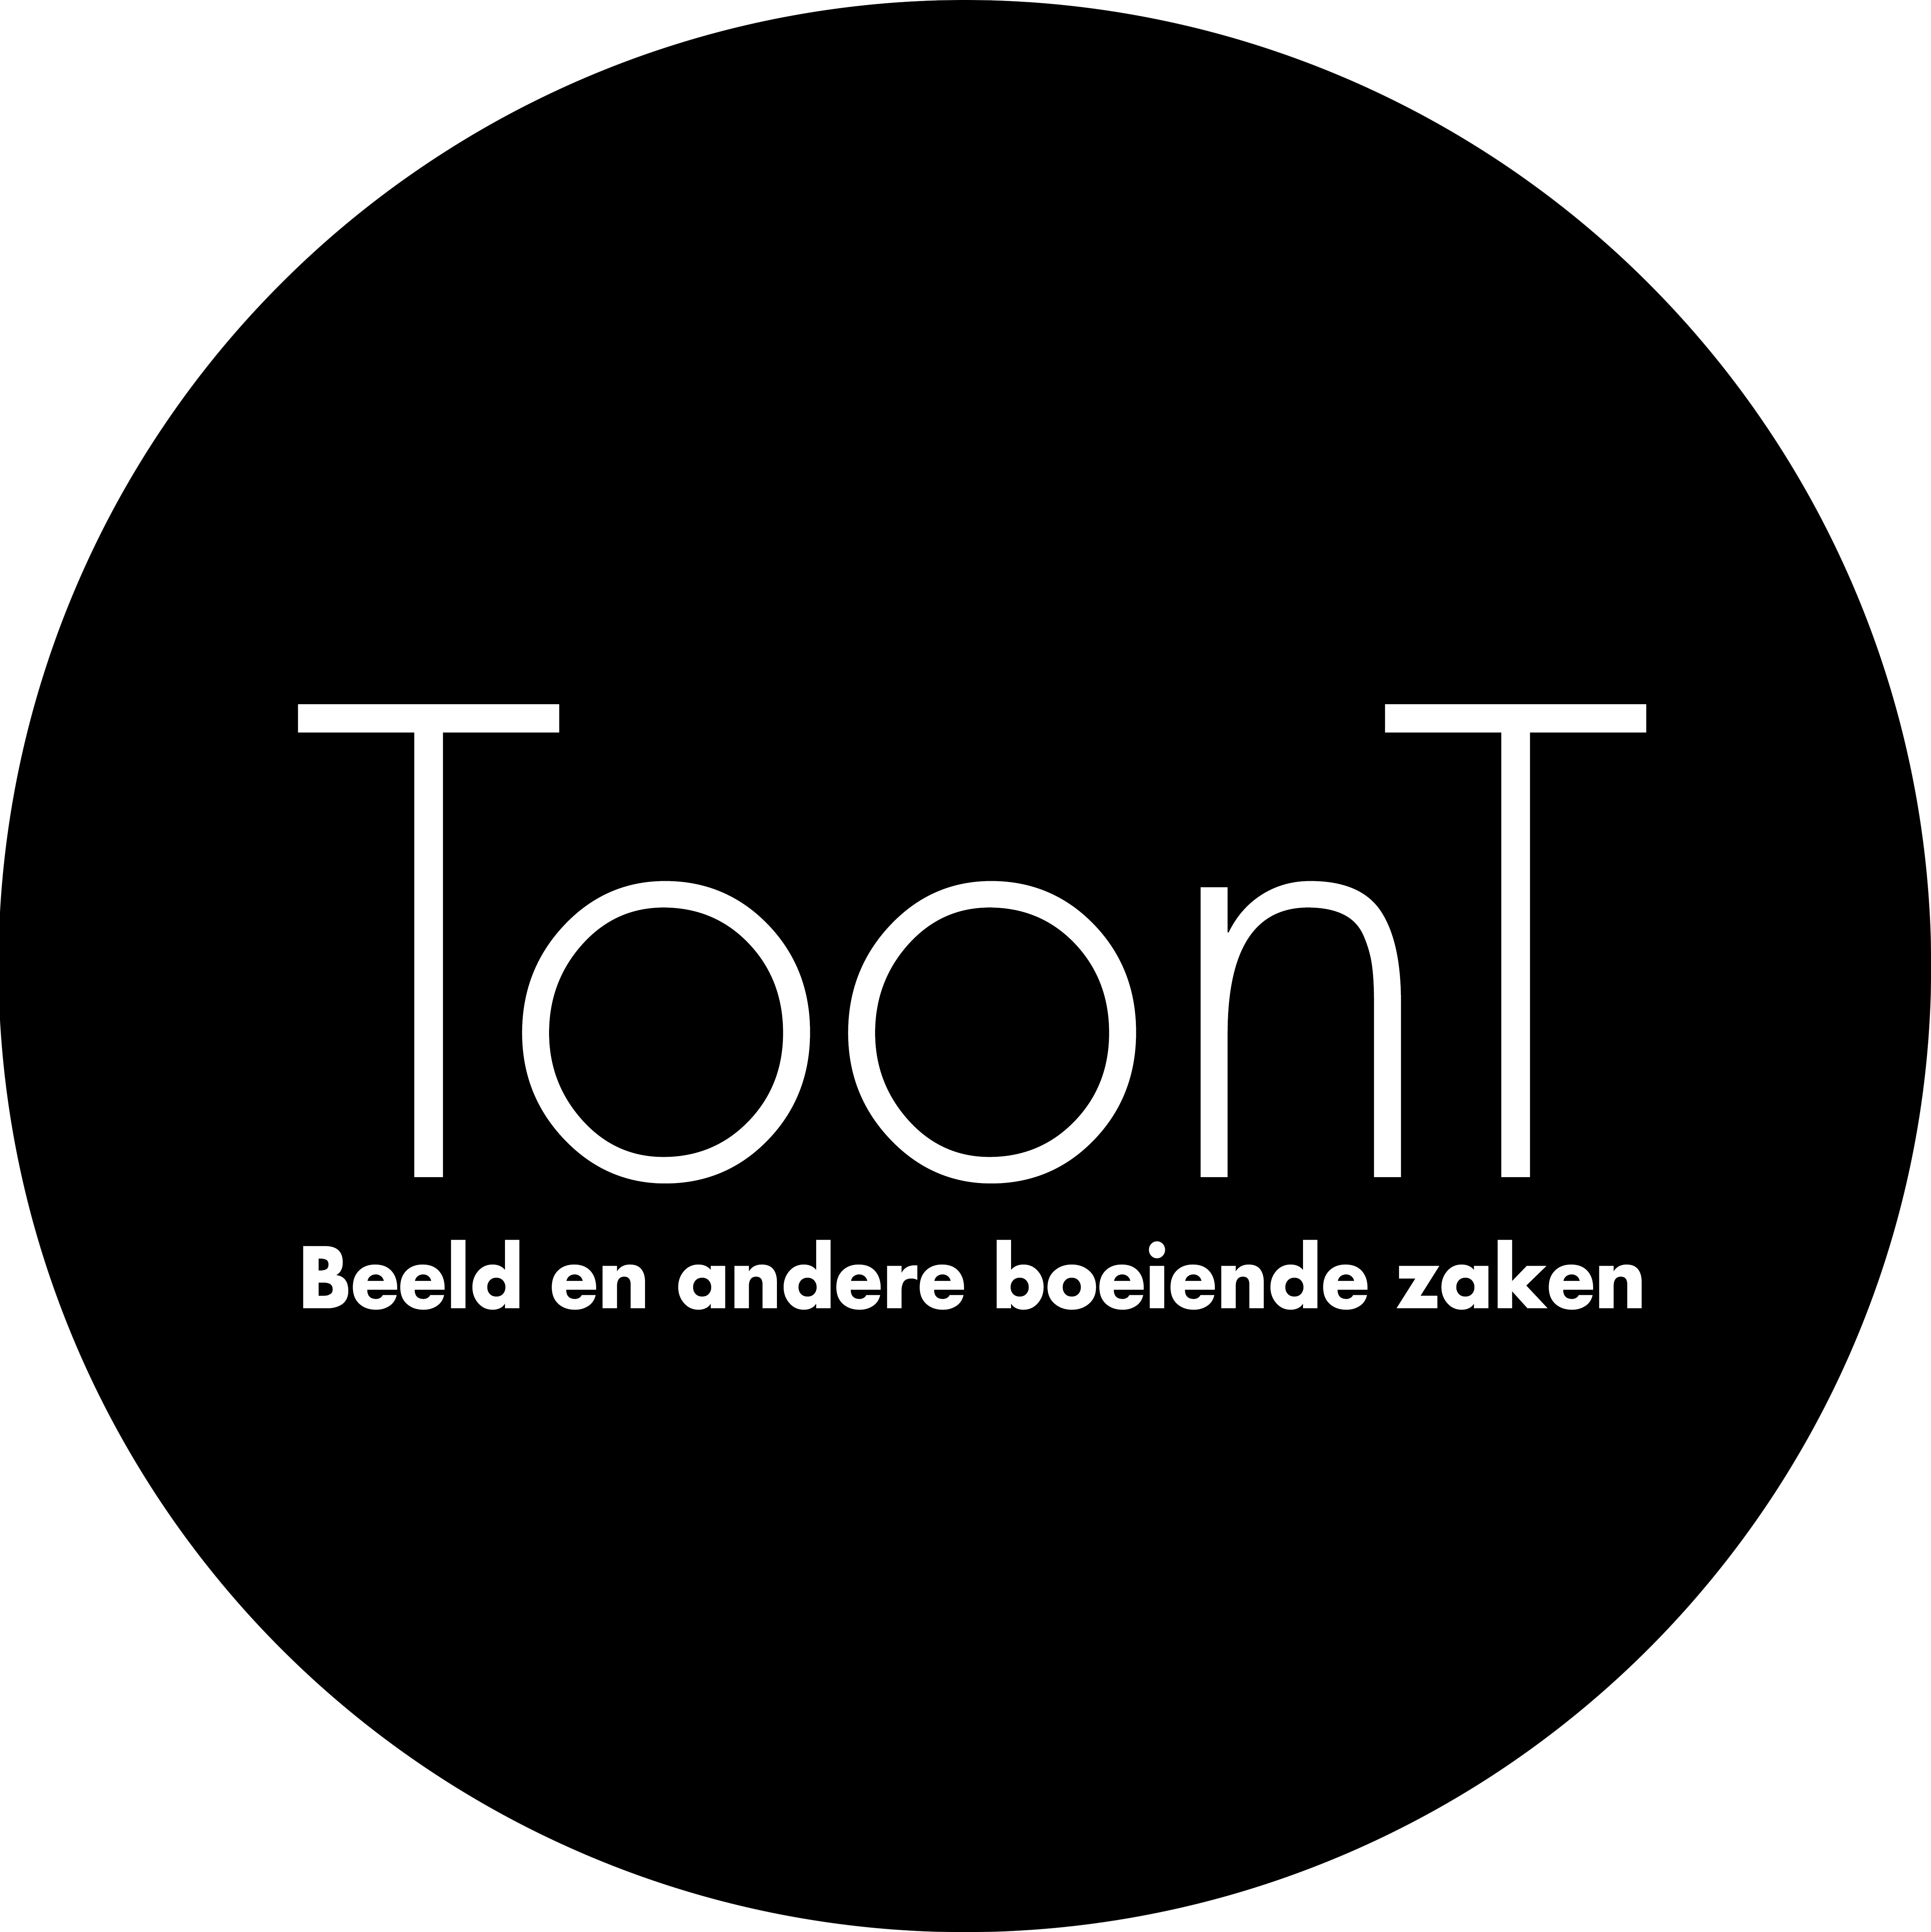 ToonT